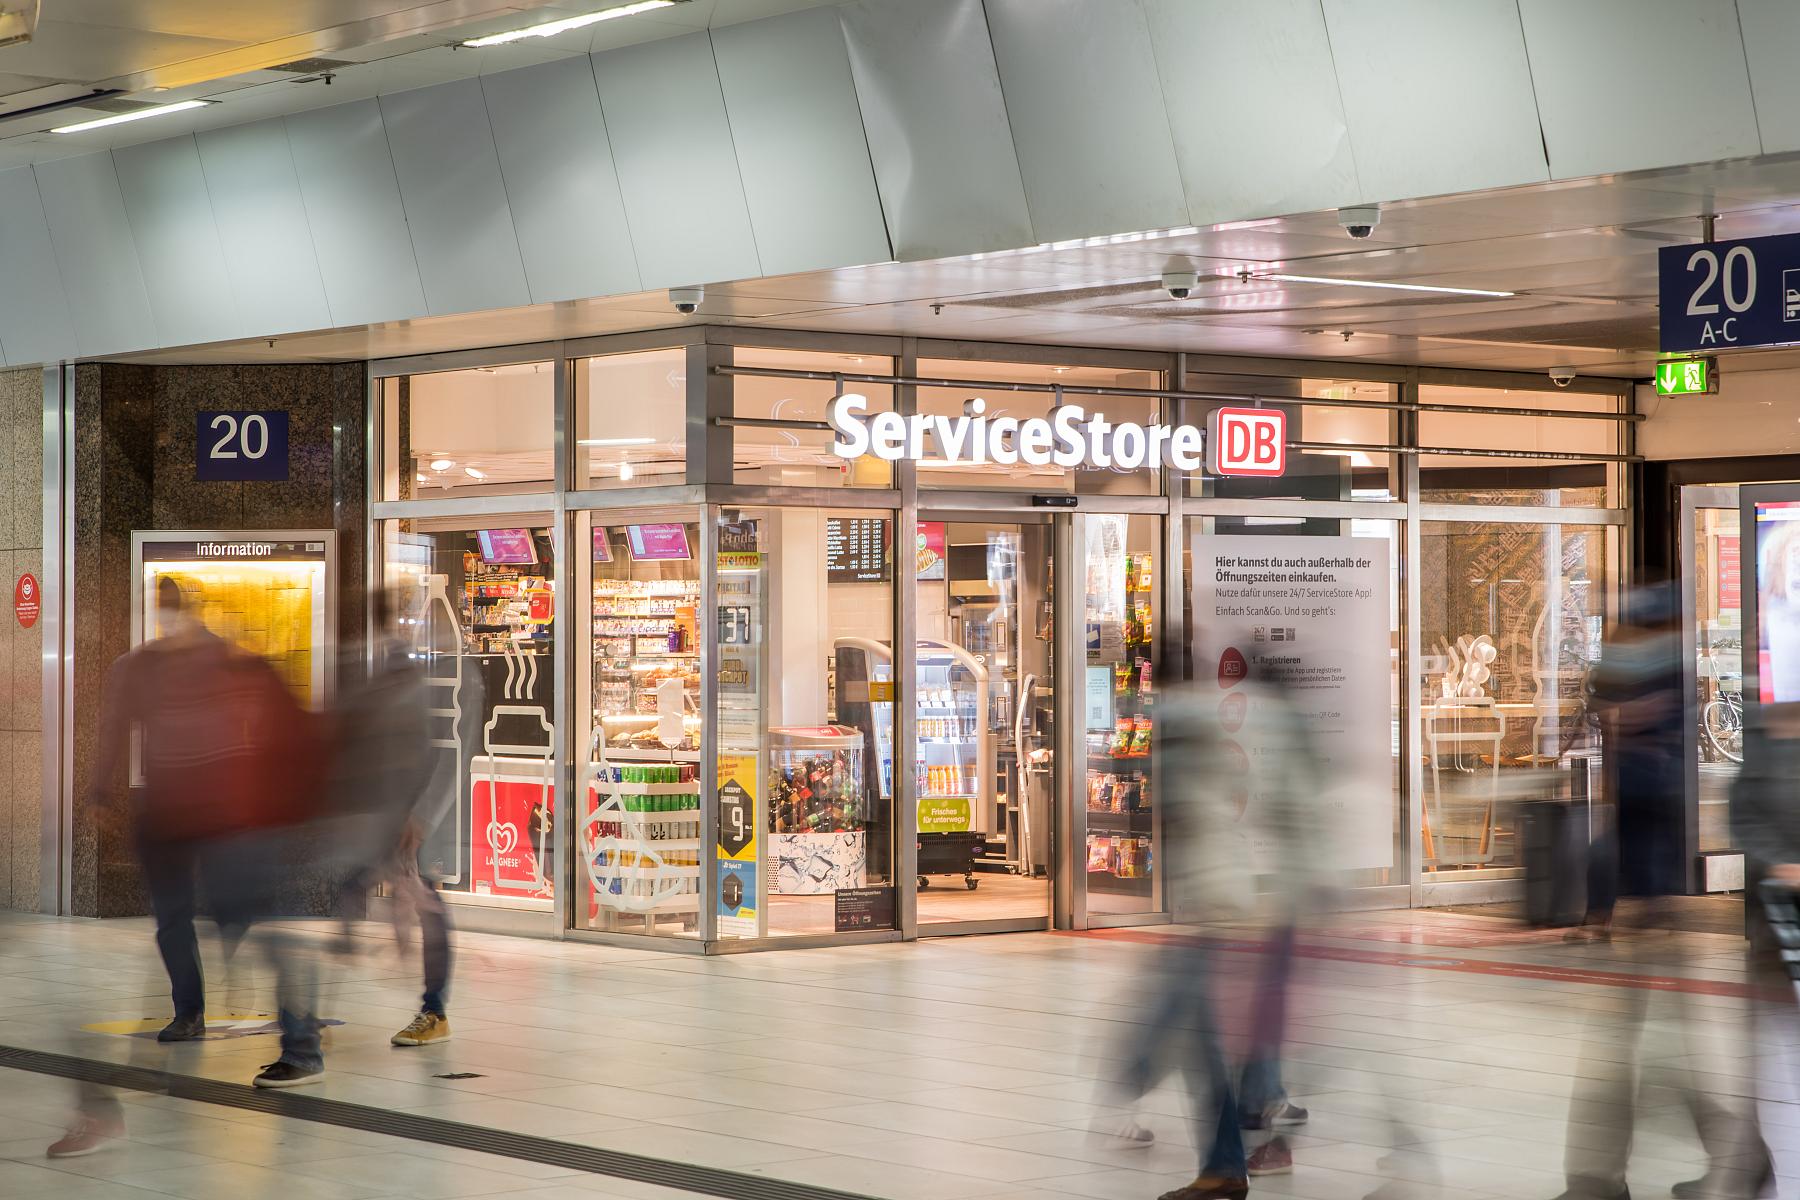 ServiceStore DB — Unser Convenience-Store an Bahnhöfen